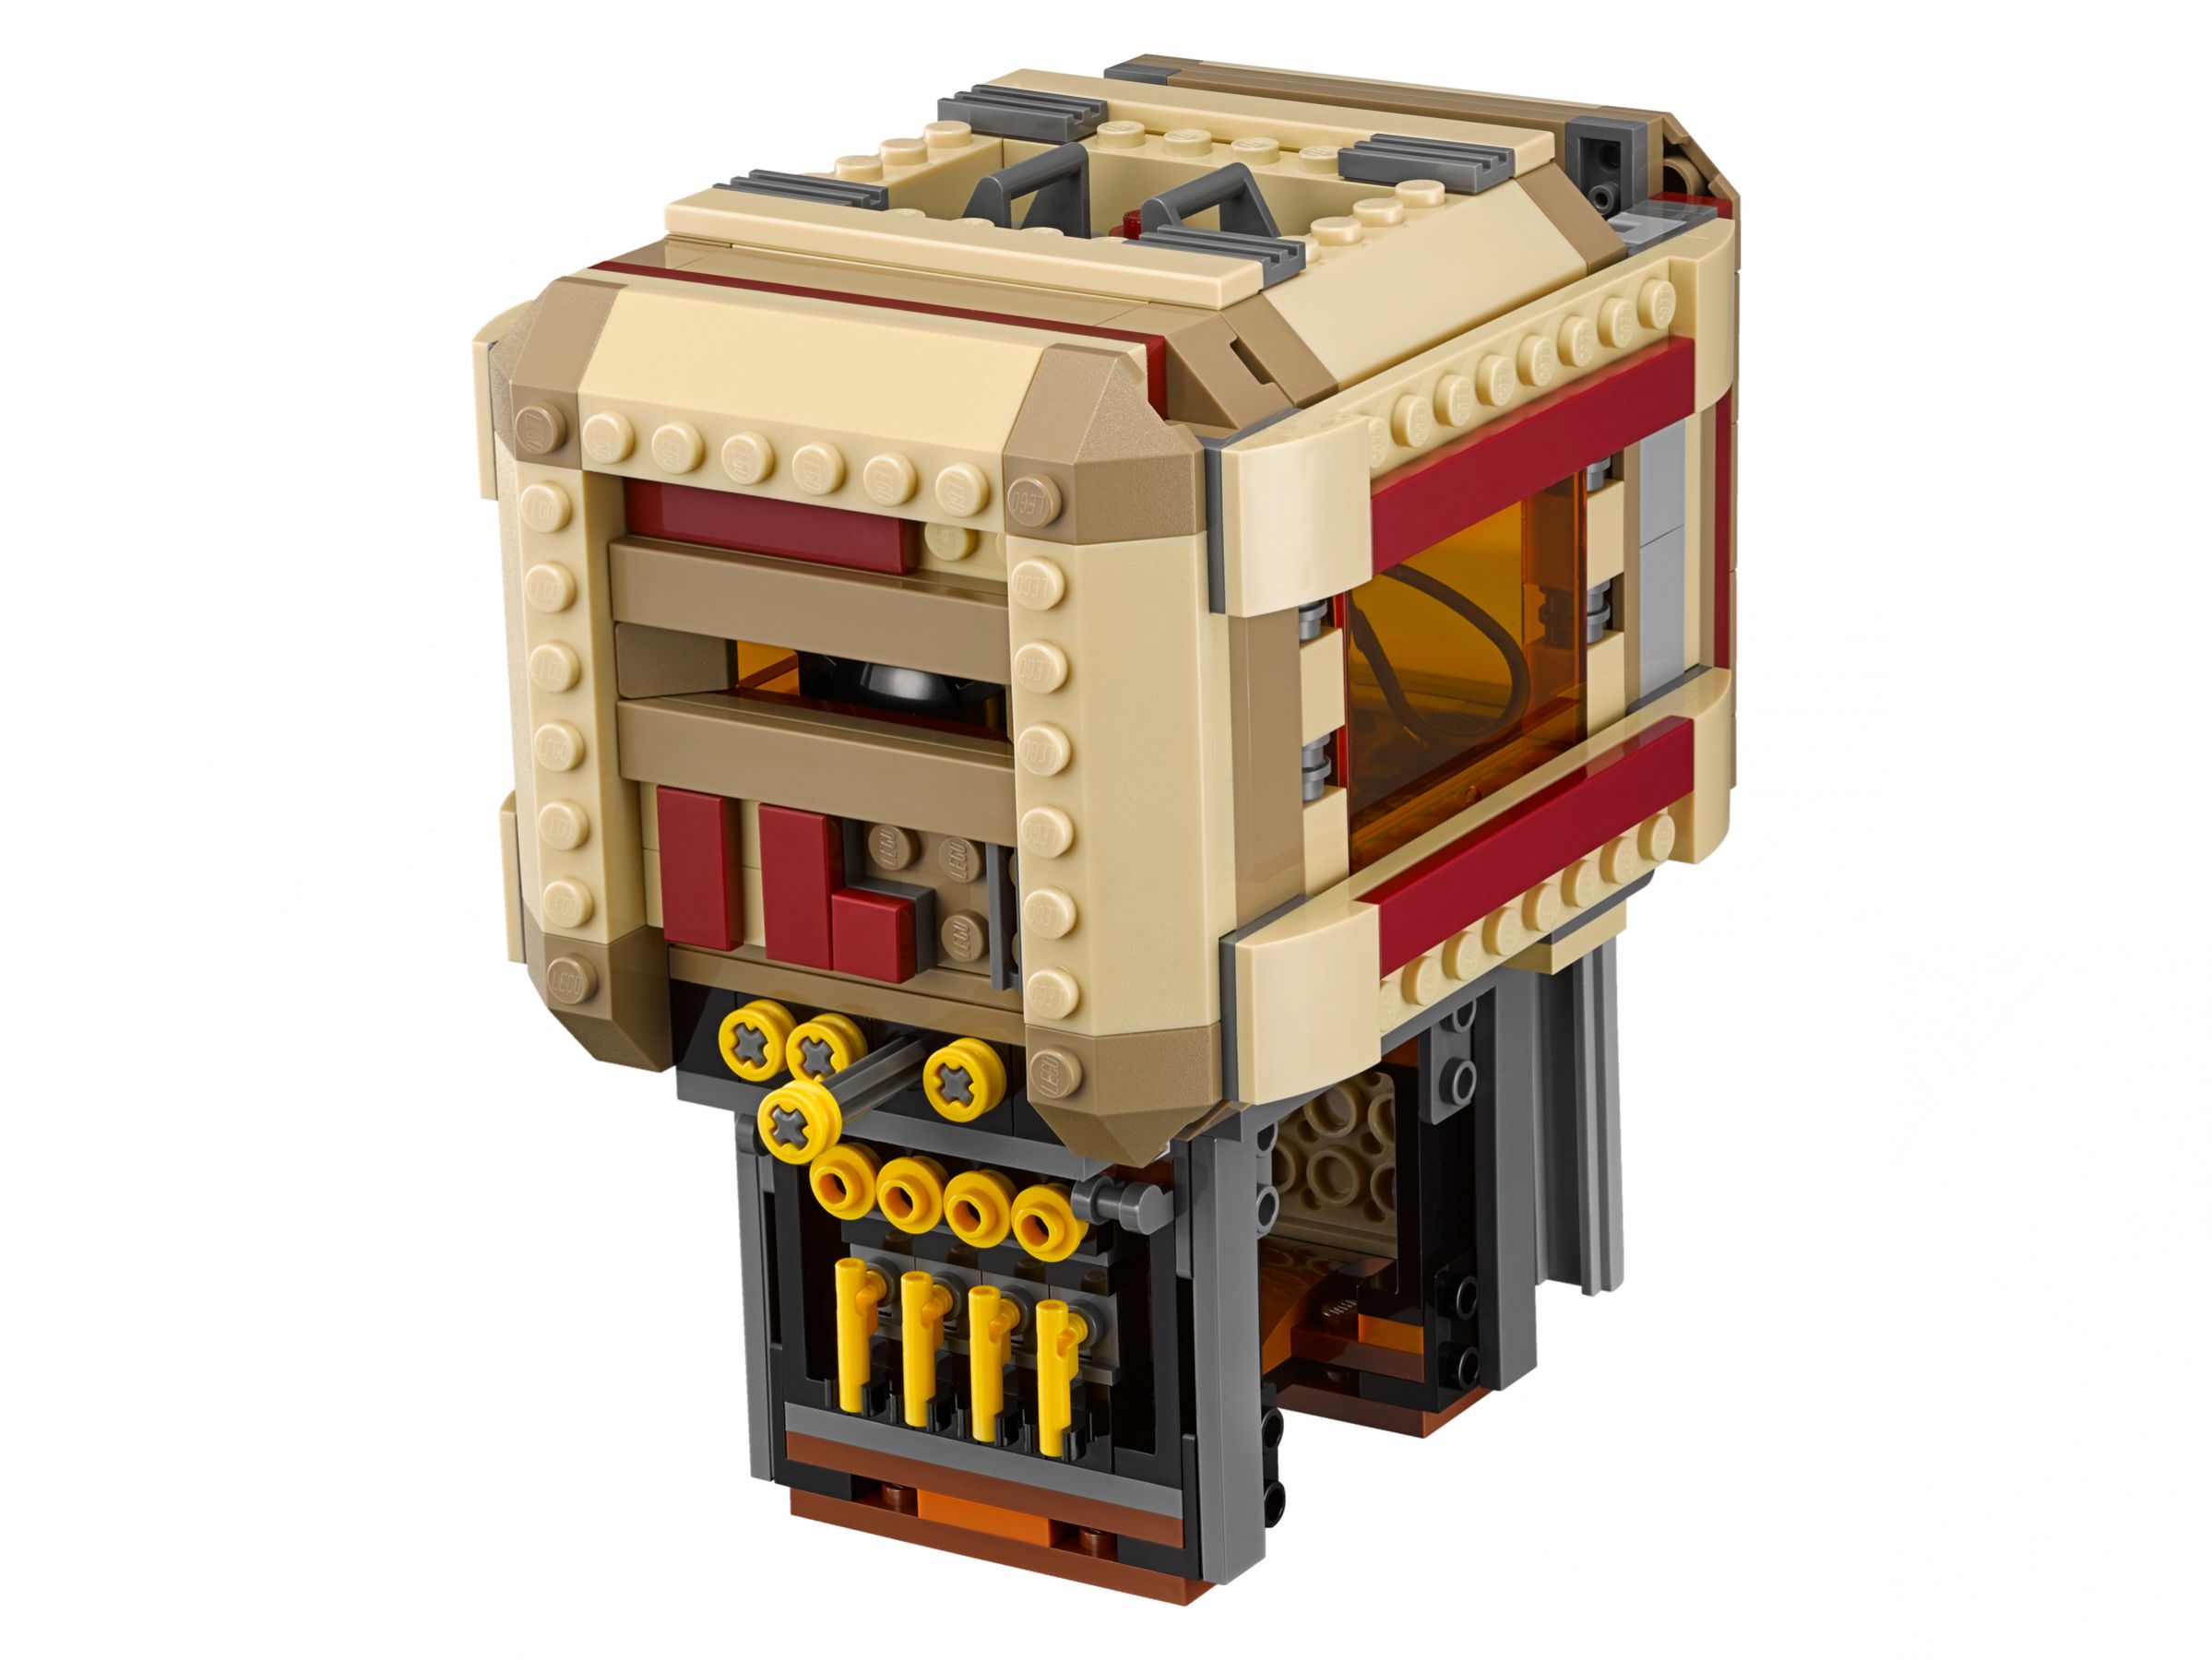 LEGO Star Wars 75180 Rathtar™ Escape LEGO_75180_alt5.jpg